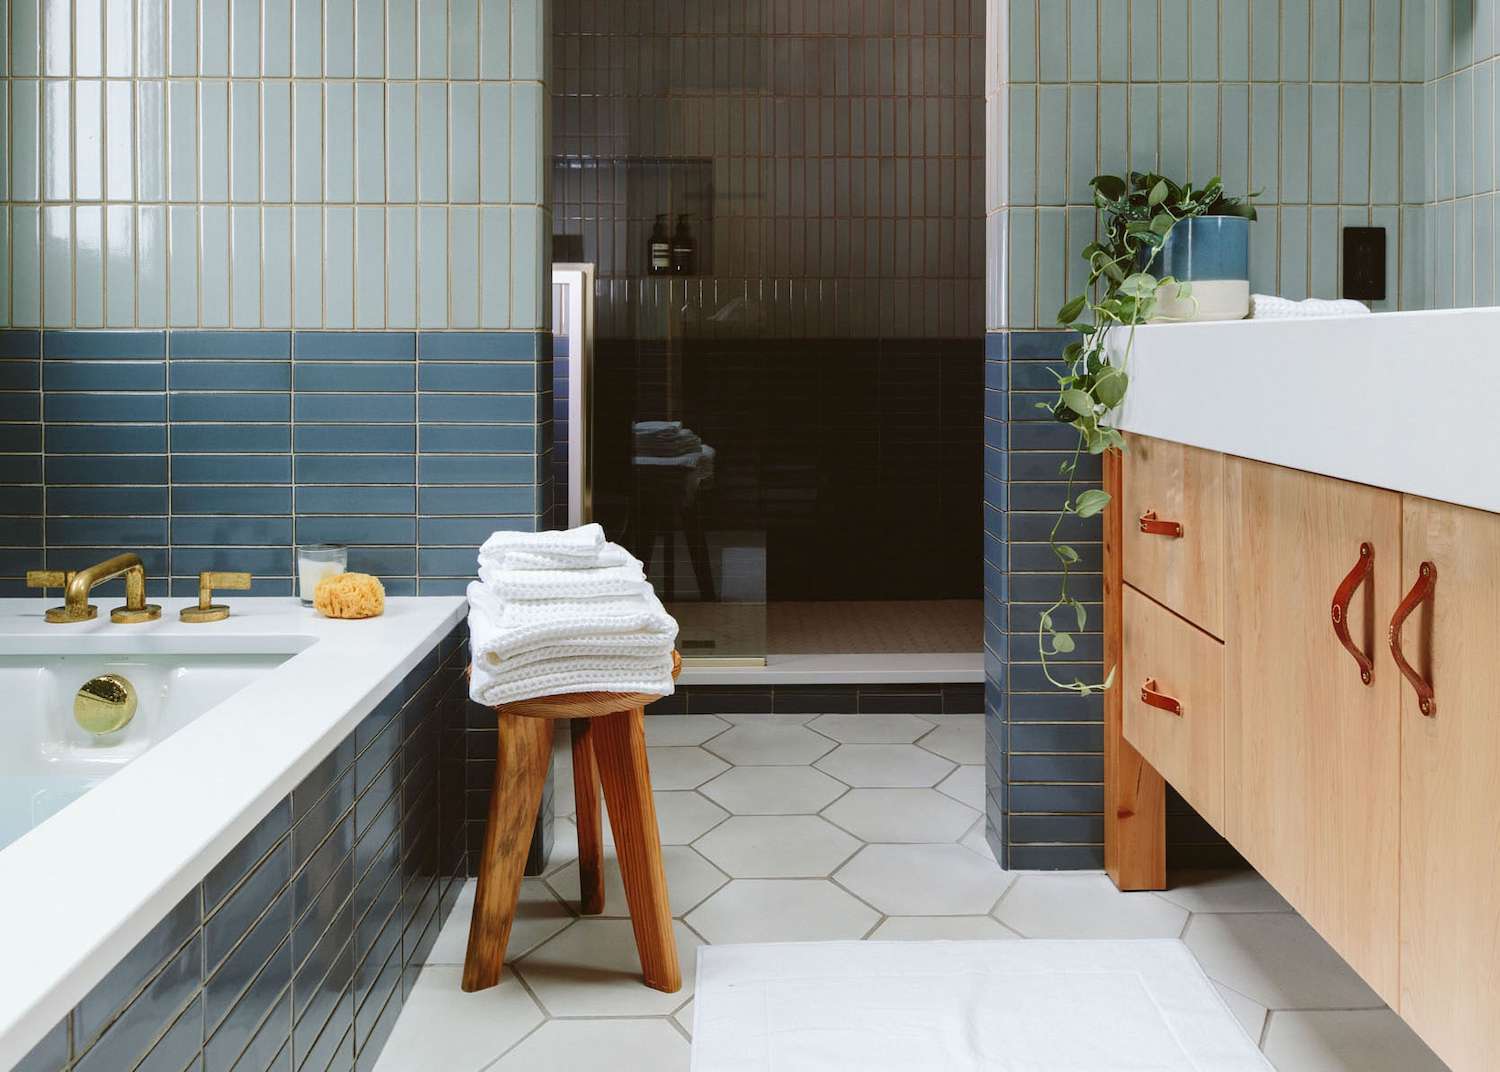 ideias de azulejos para o piso do banheiro